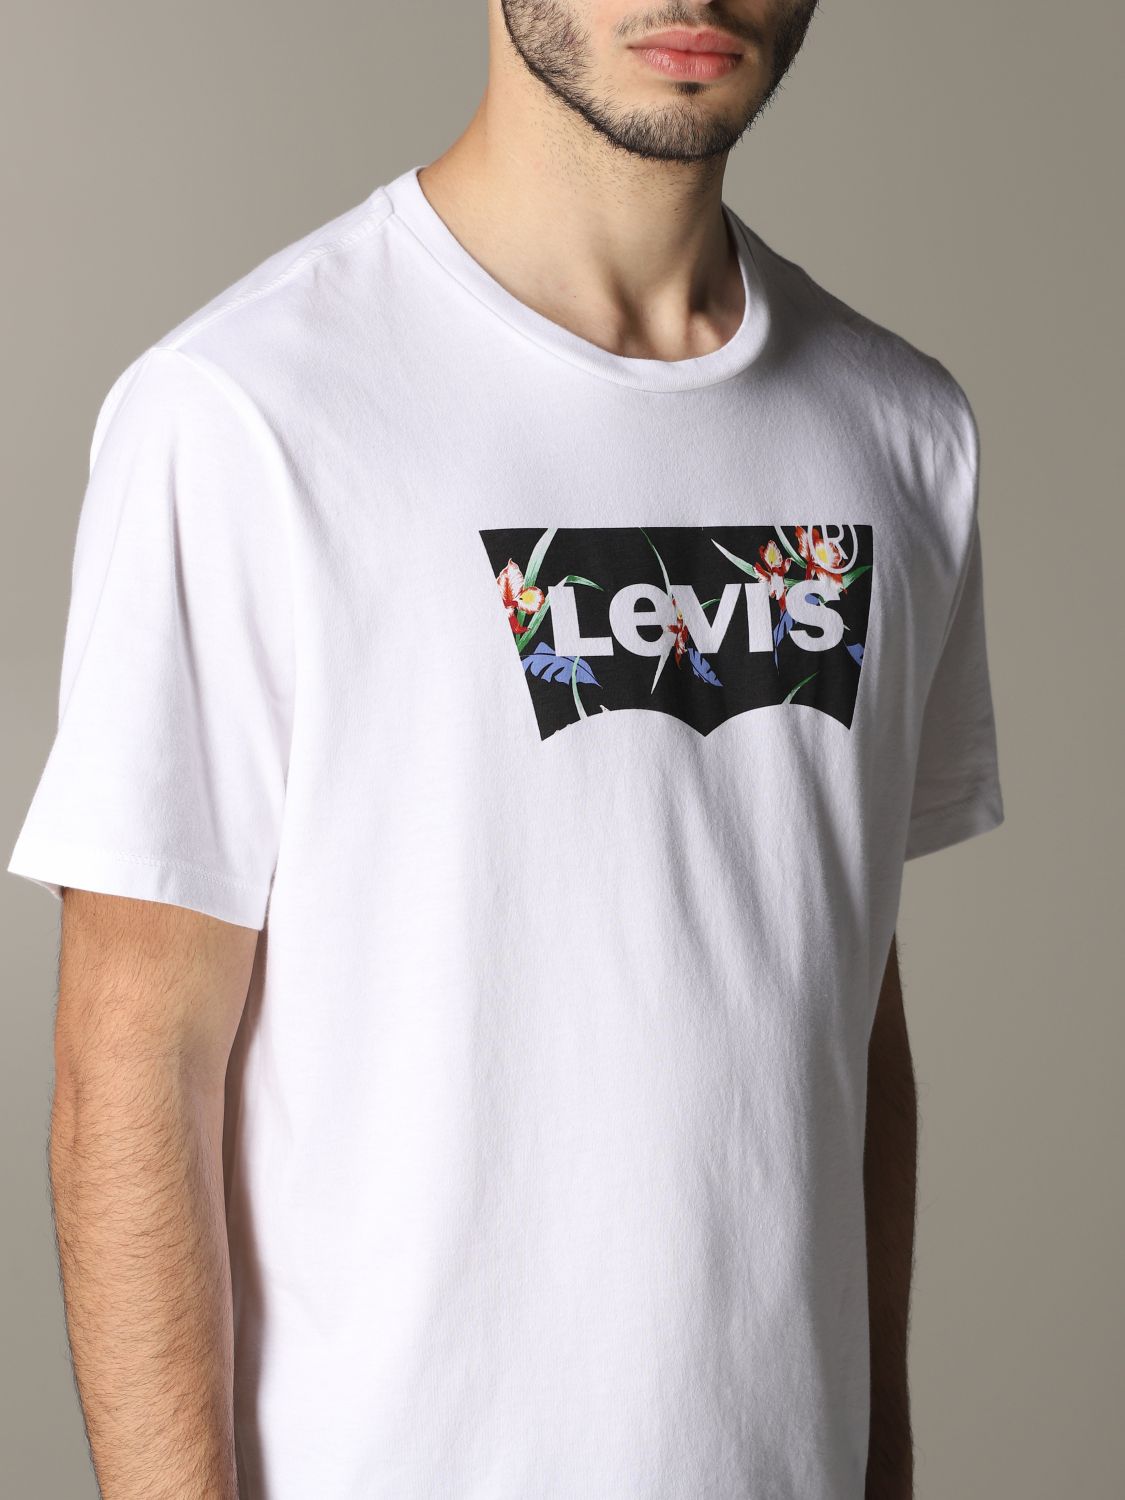 levis copy t shirts